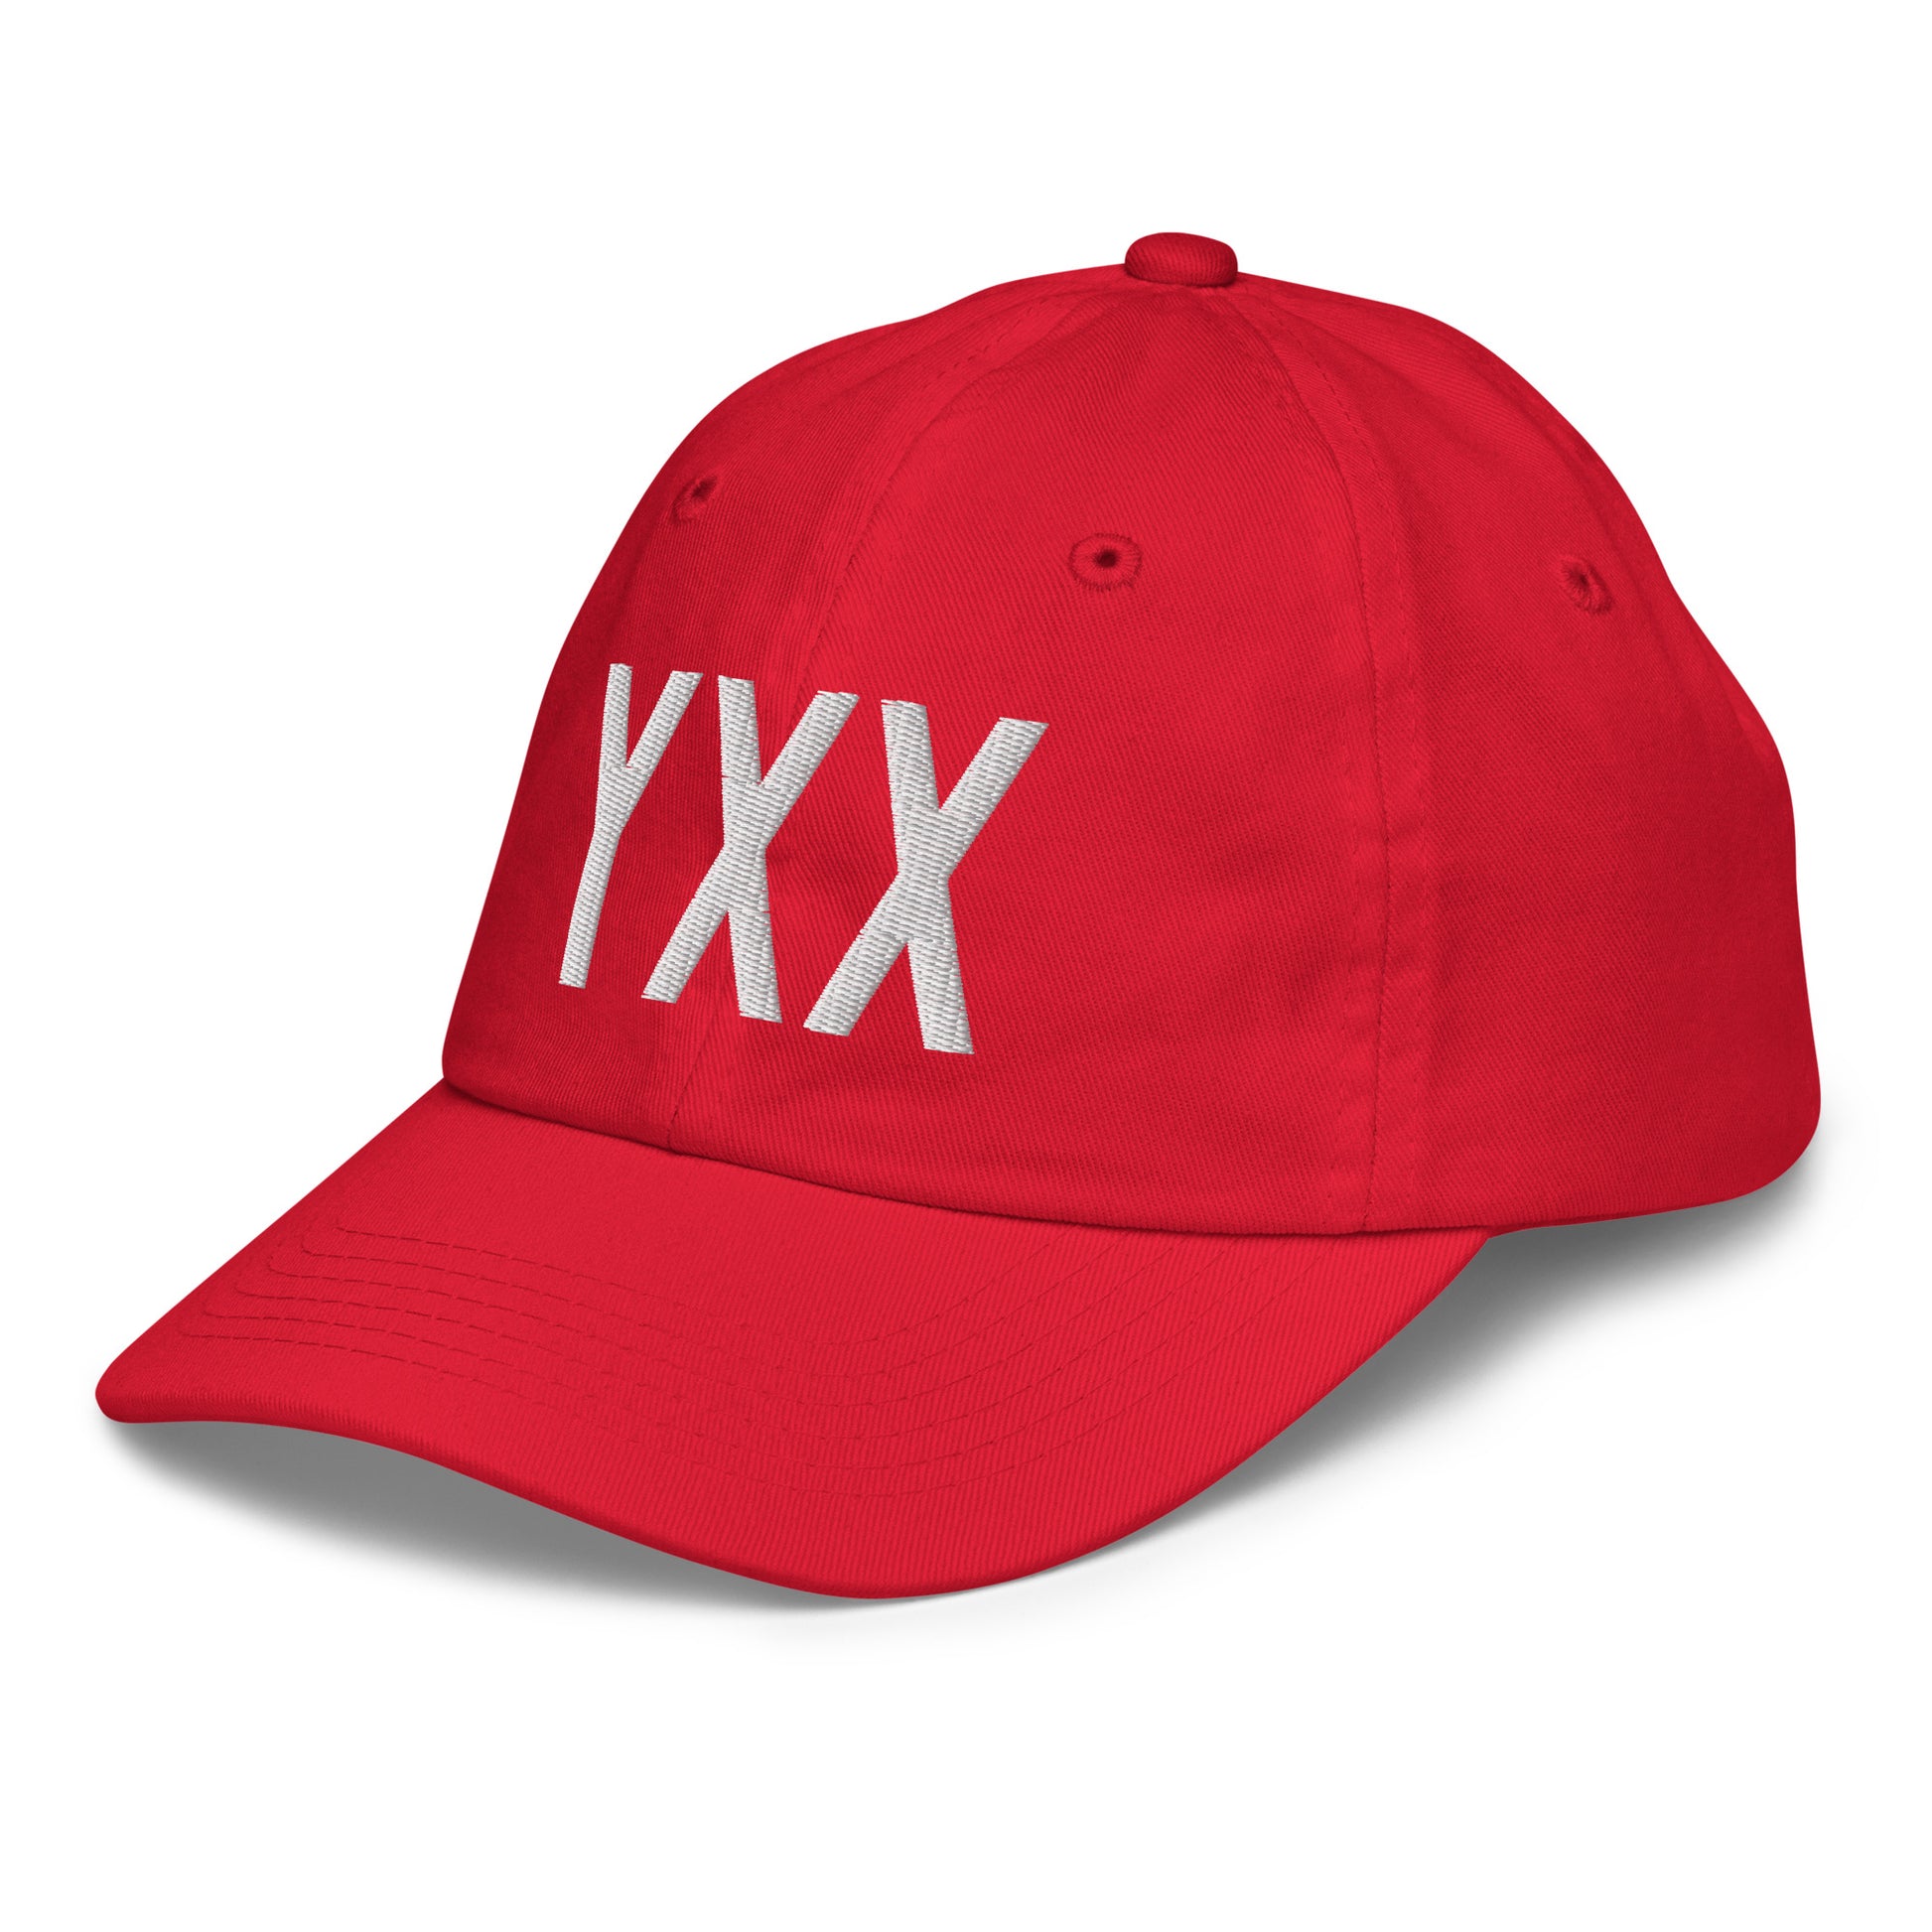 Airport Code Kid's Baseball Cap - White • YXX Abbotsford • YHM Designs - Image 19